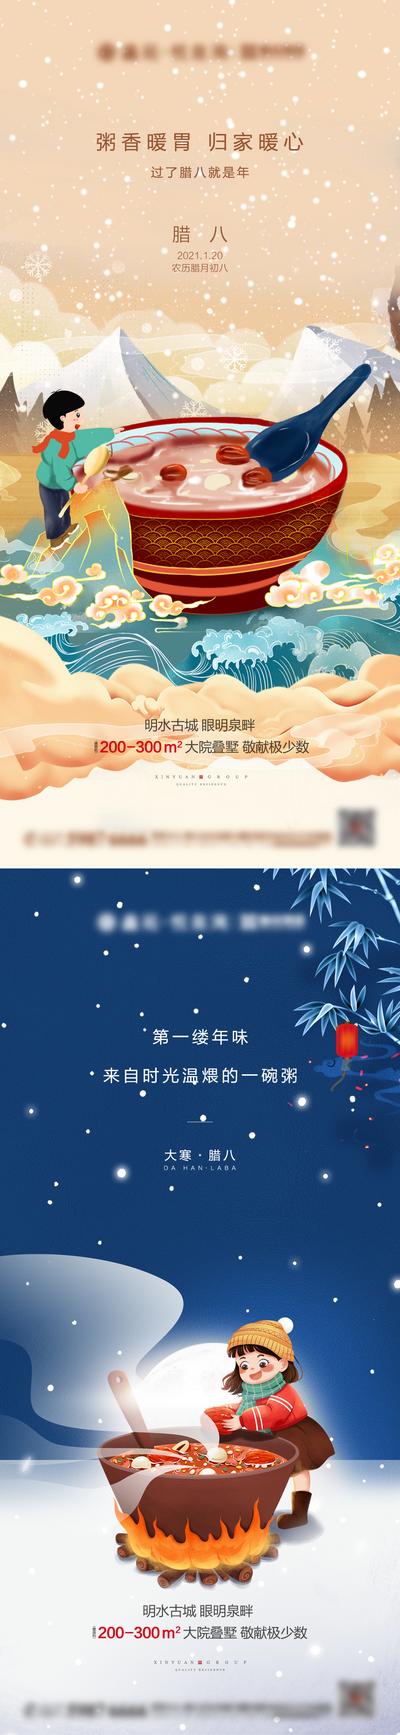 南门网 海报 房地产 中国传统节日 腊八节 系列 卡通 手绘